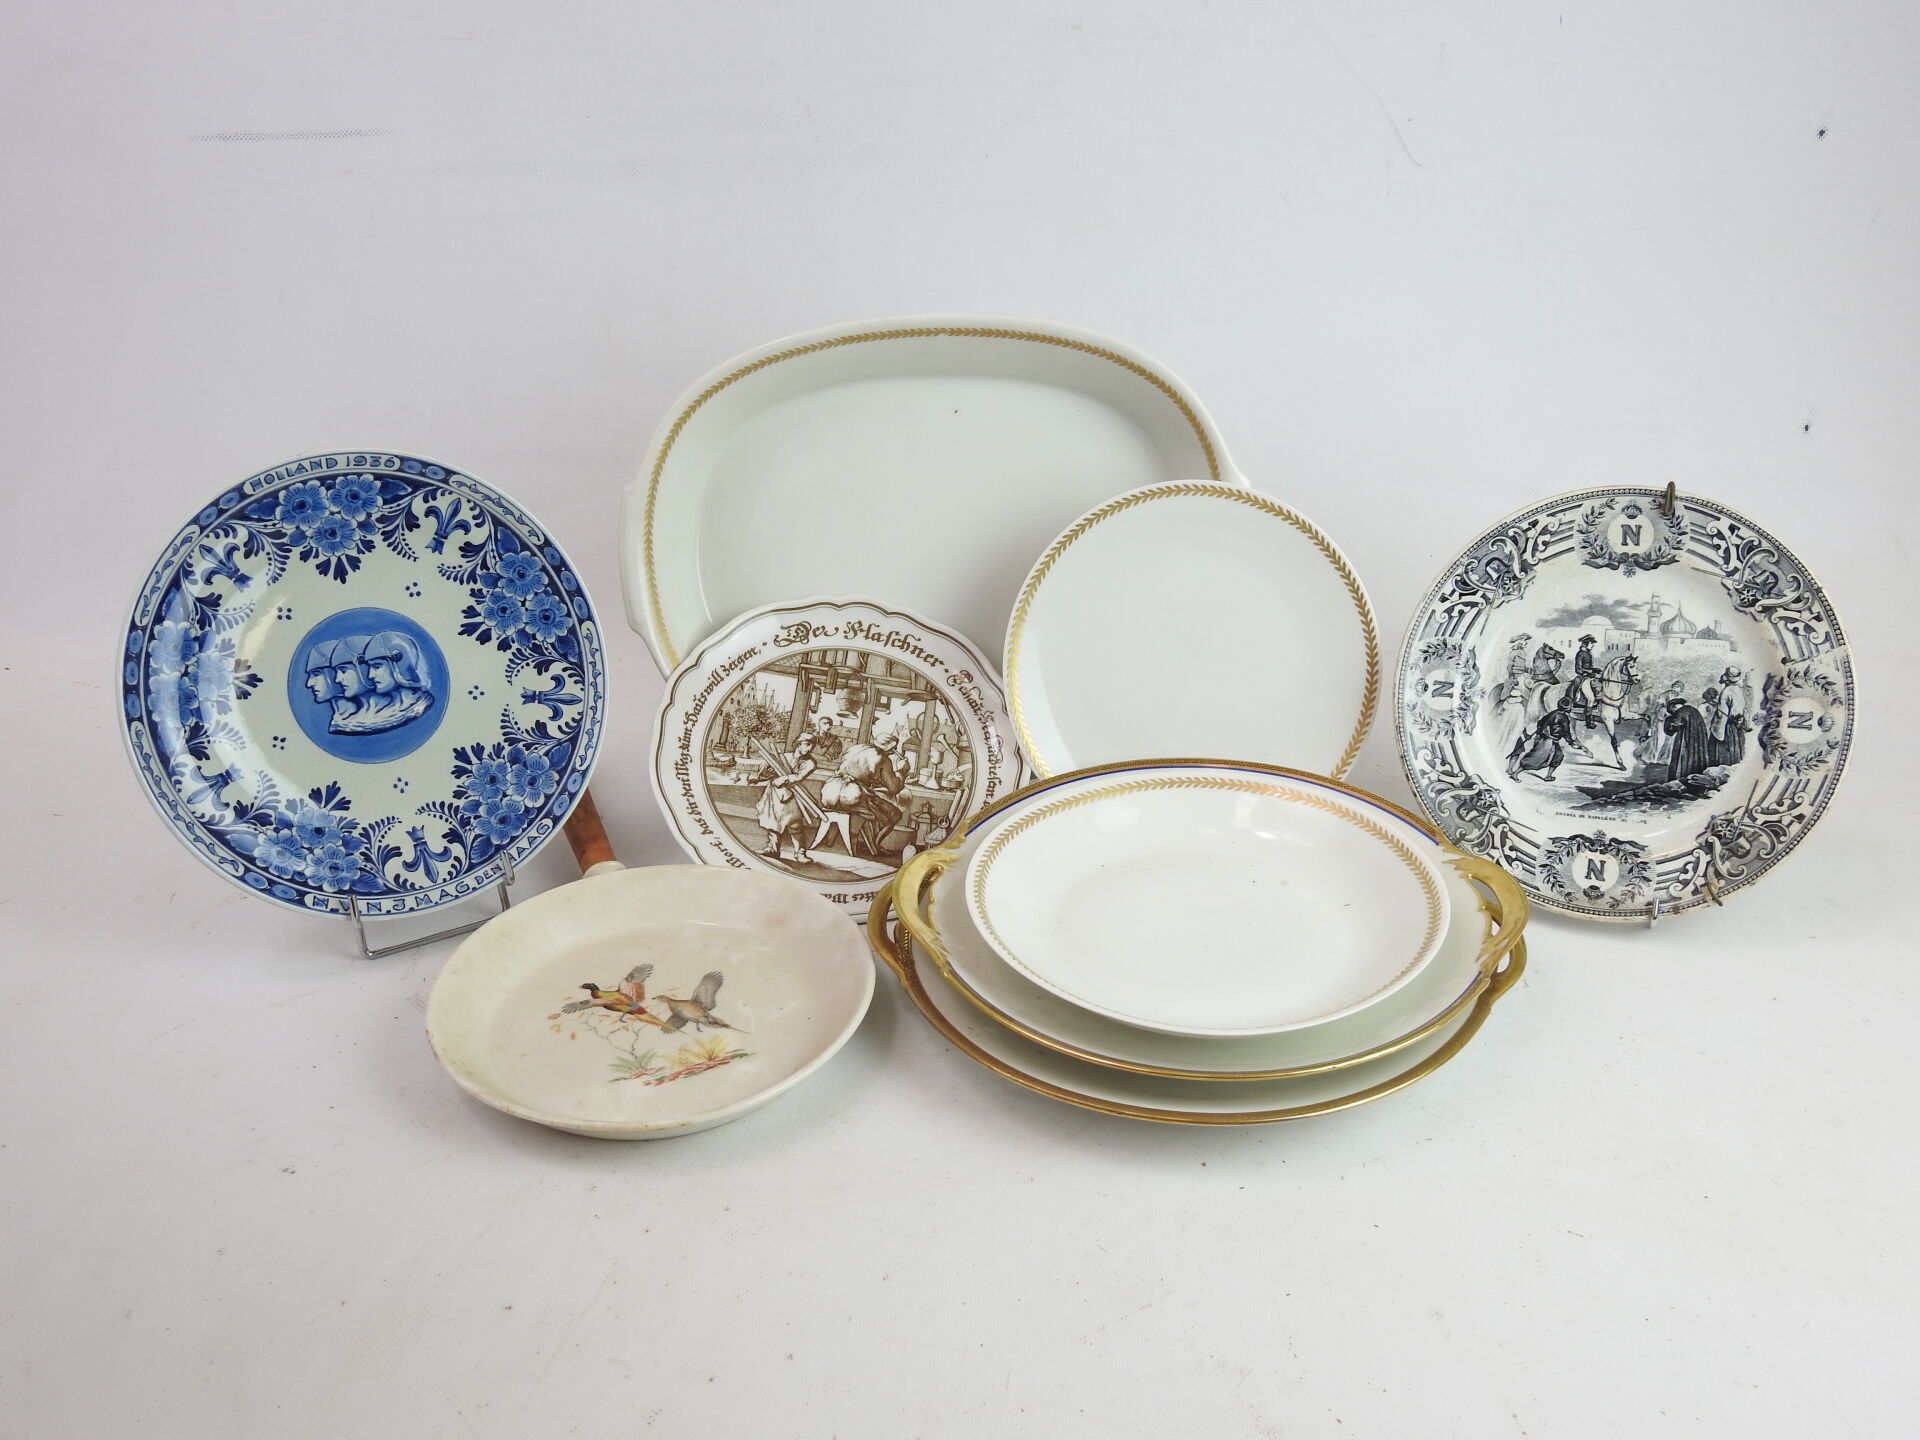 Null 一批陶器和瓷器，包括碗和盘子。磨损和撕裂